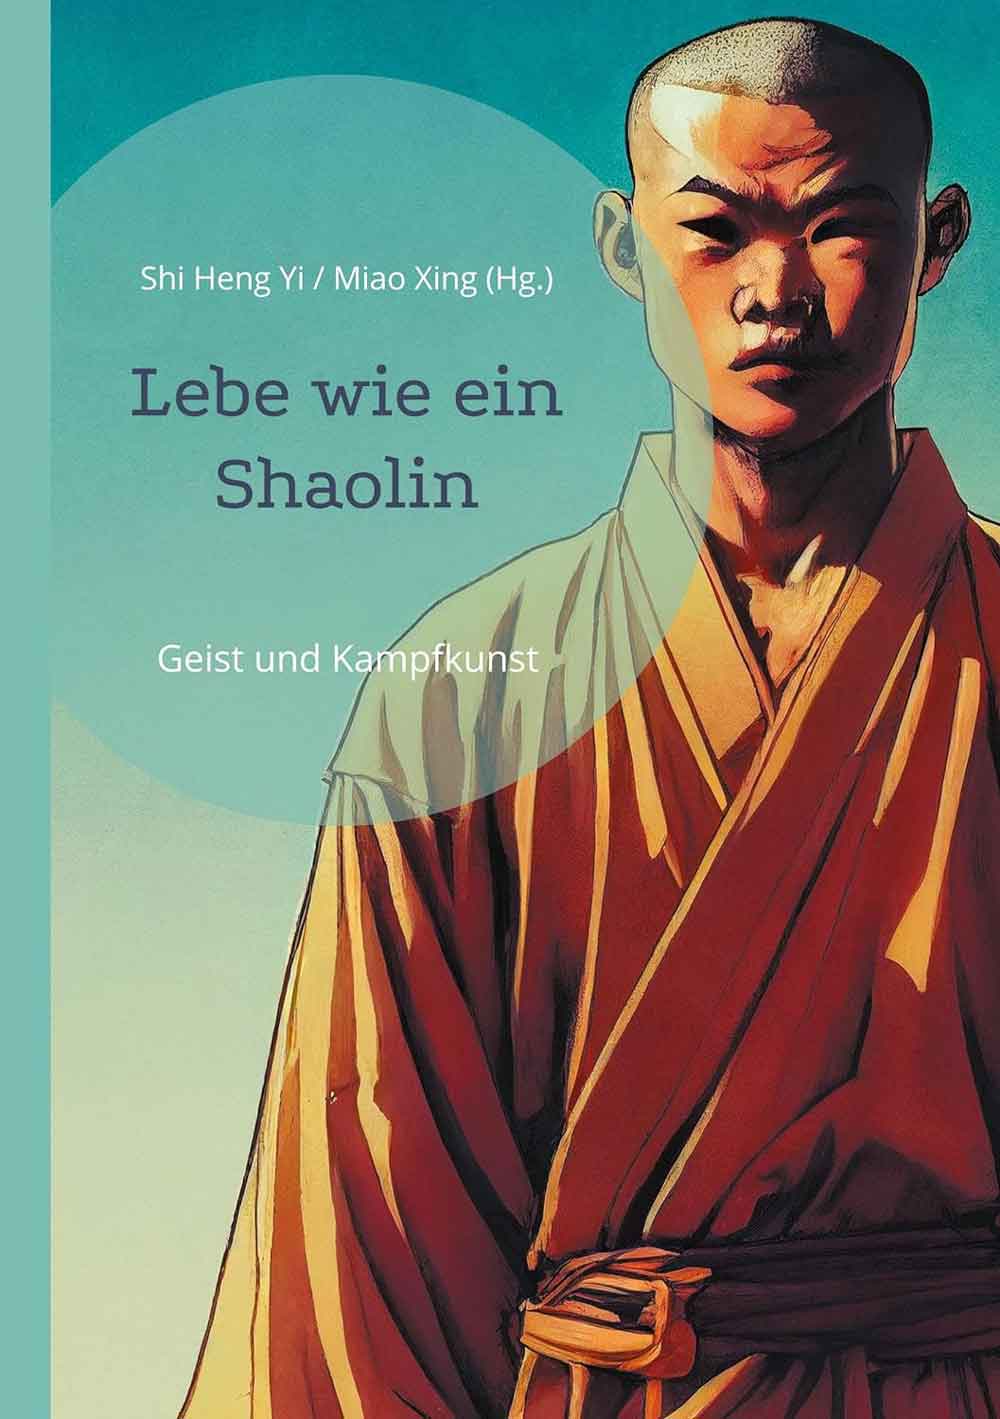 Lesetipps für Gütersloh: »Lebe wie ein Shaolin« und »Die 13 Shaolin« – Kampfkunst Ratgeber von Shi Heng Yi (Herausgeber) und sHanLi